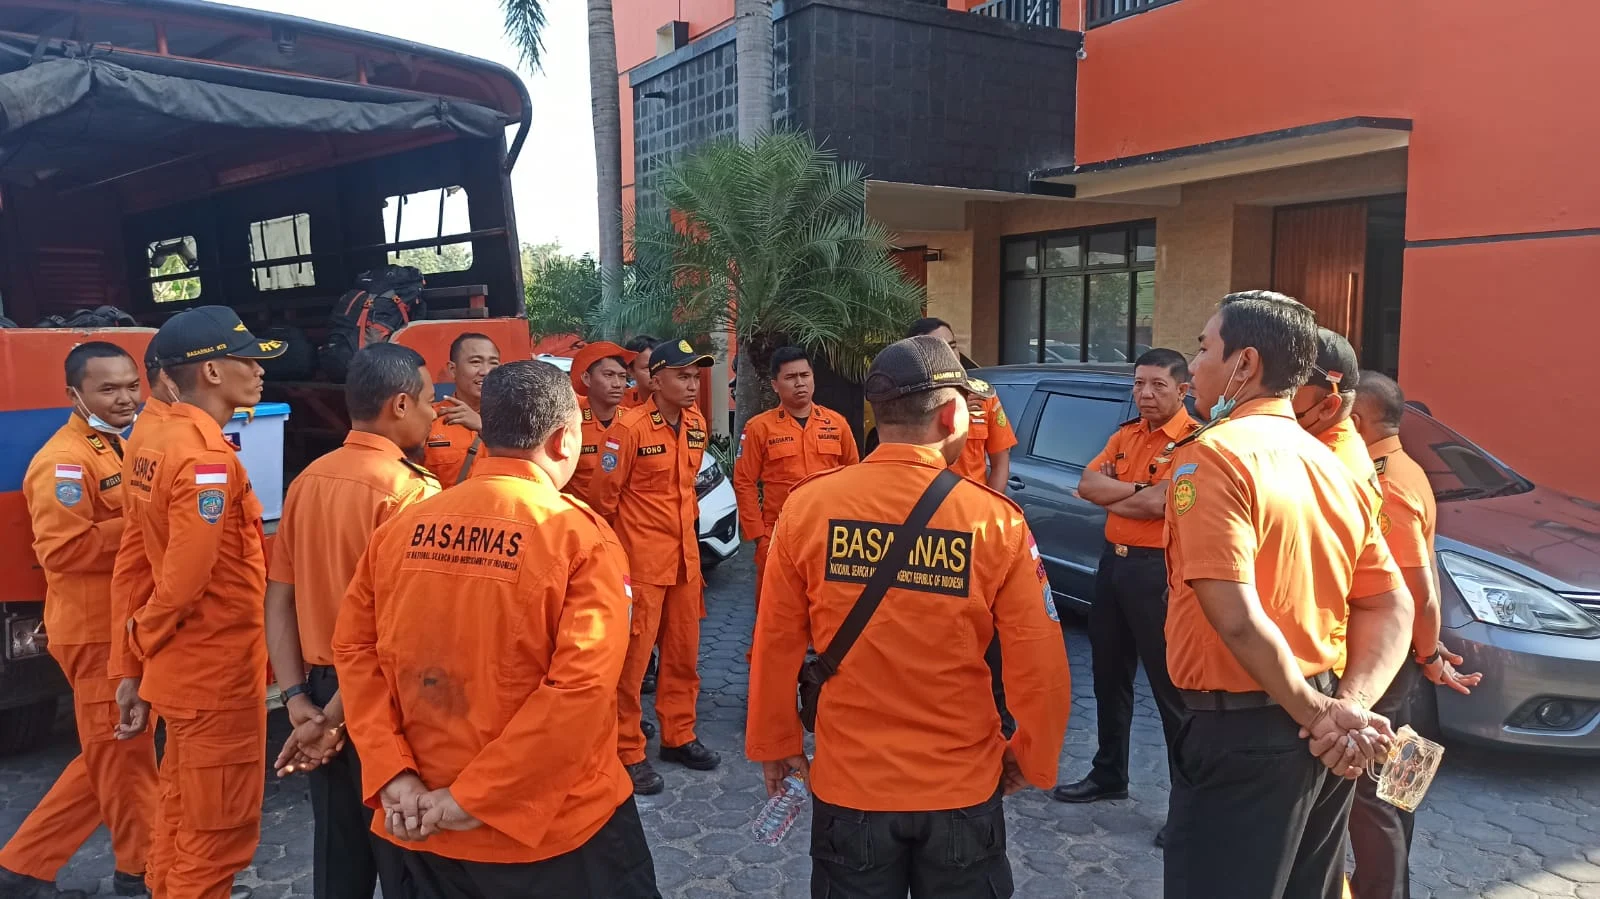 צוותי החילוץ באינדונזיה שיצאו לחלץ את גופתו של בועז בר ענן ז''ל, שמת במהלך טיפוס